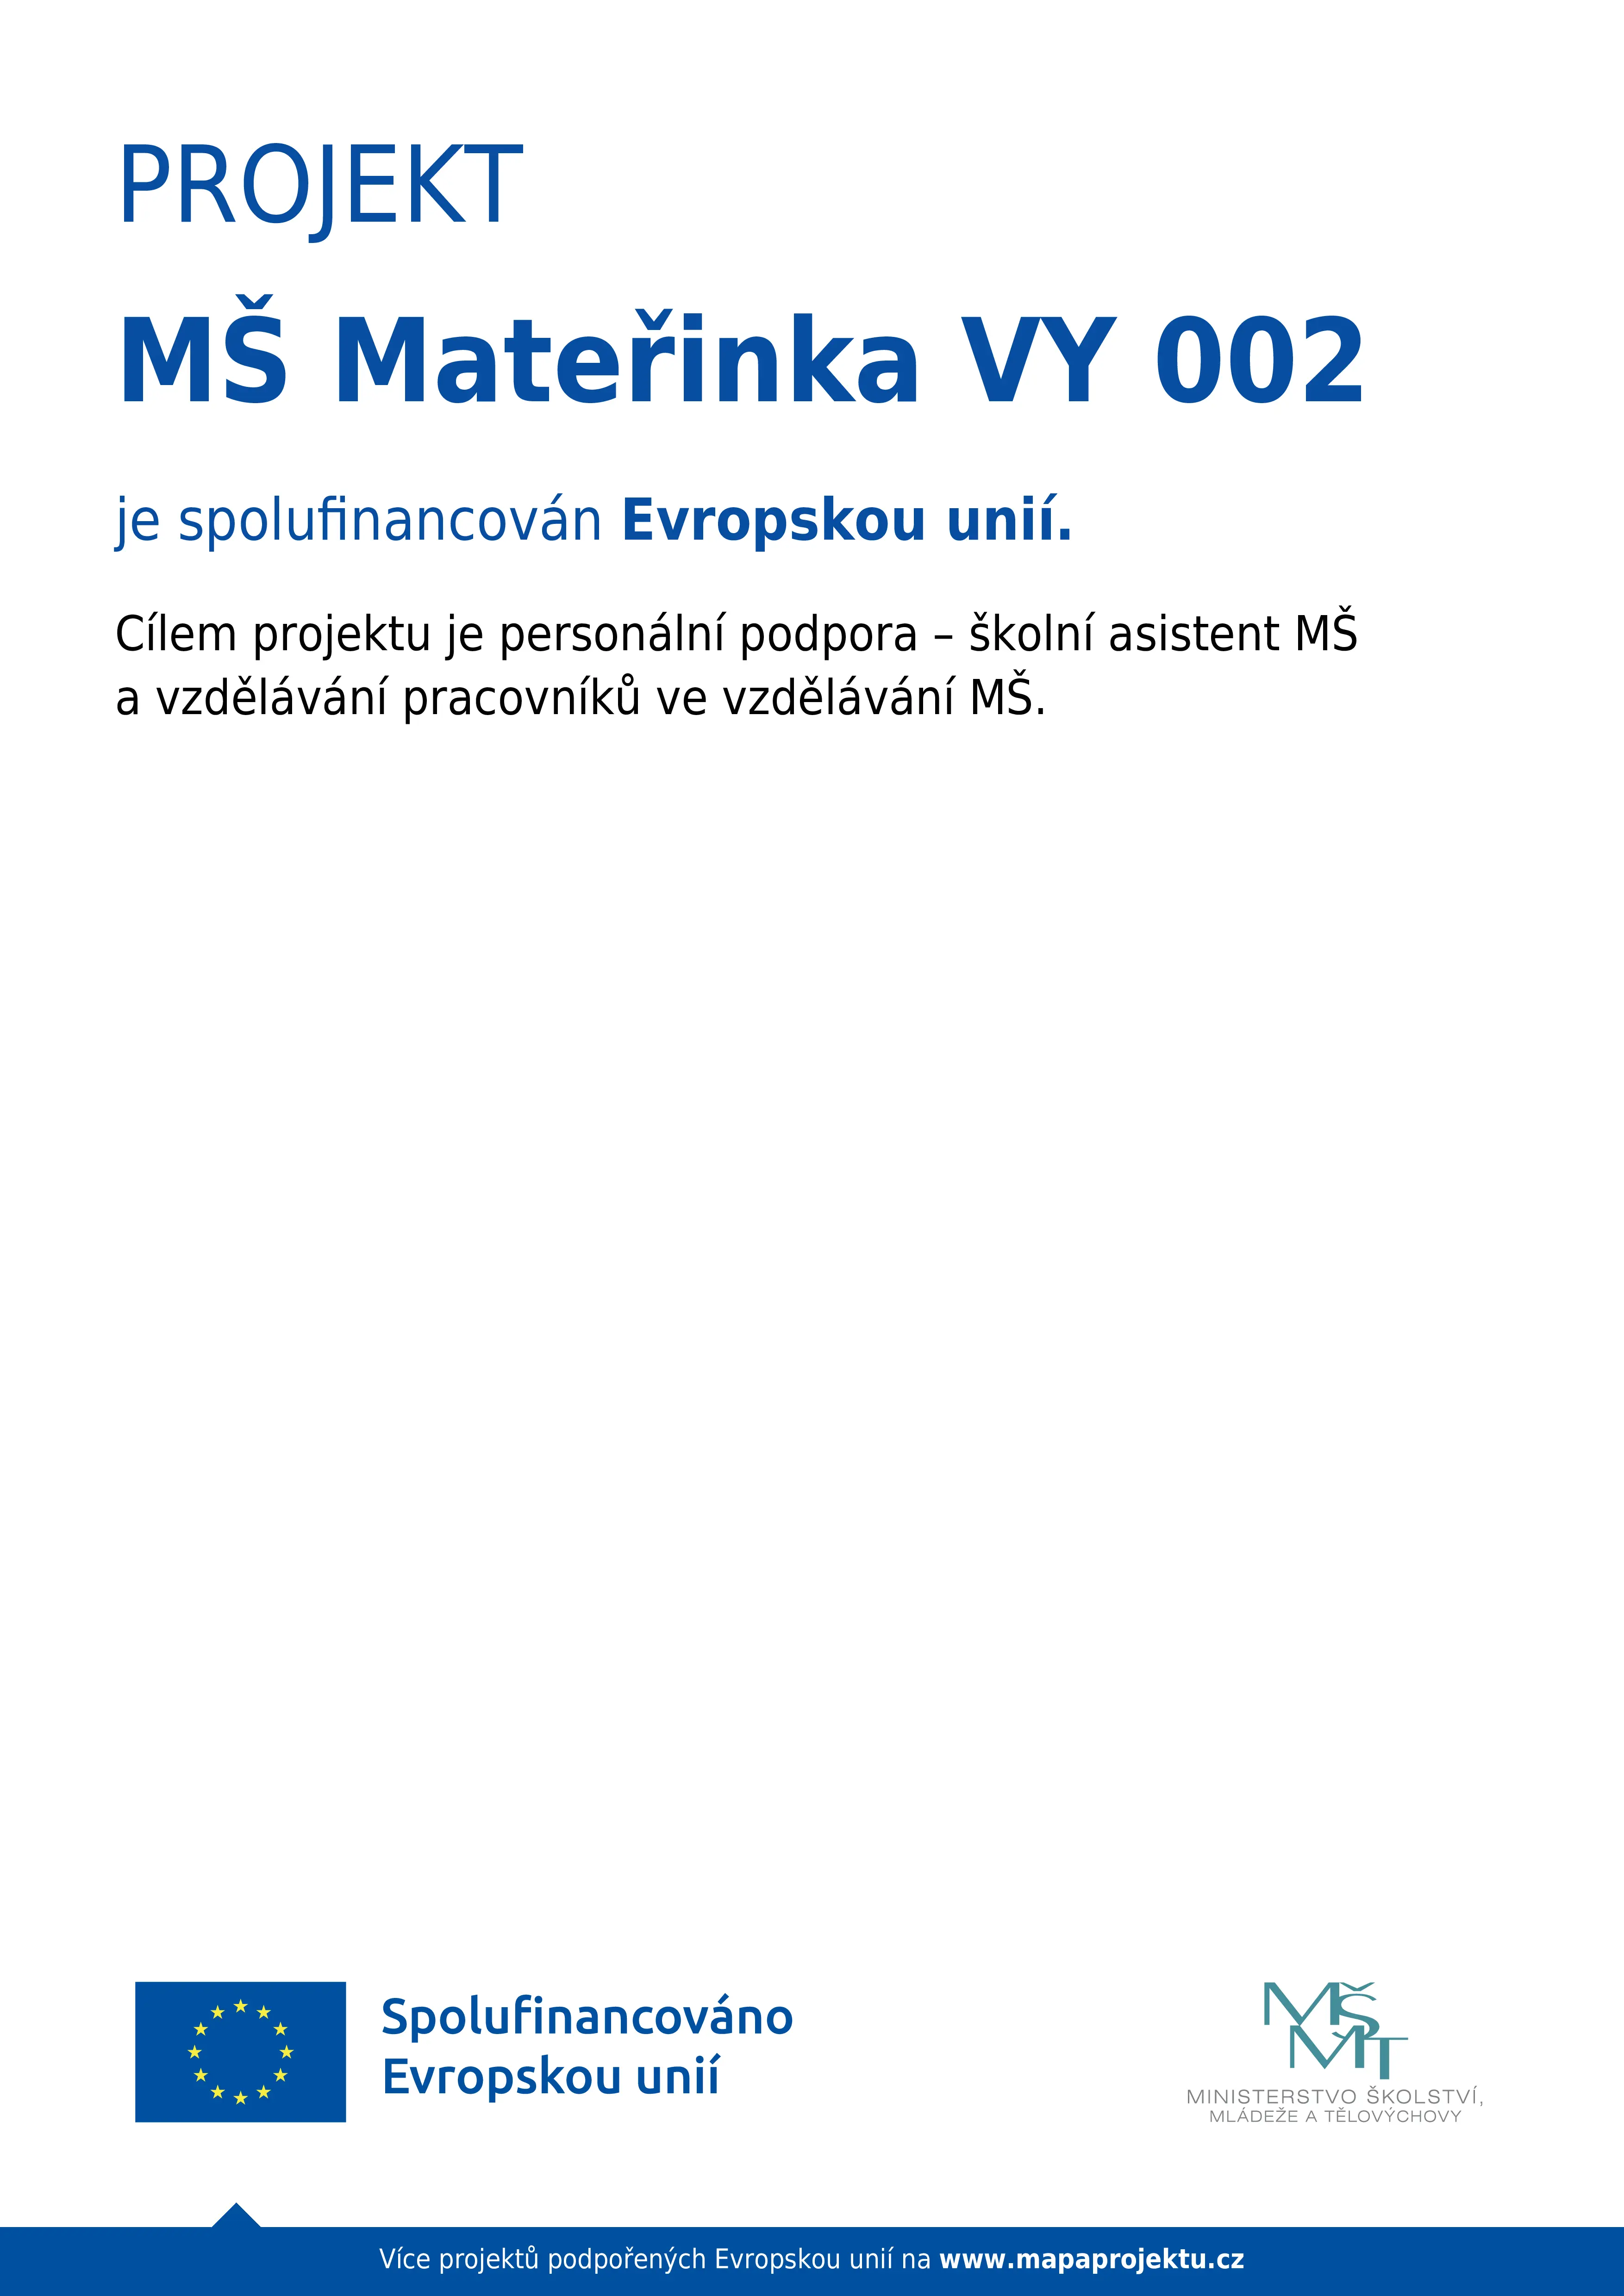 MŠ Mateřinka VY 002 byl spolufinancován Evropskou unie.